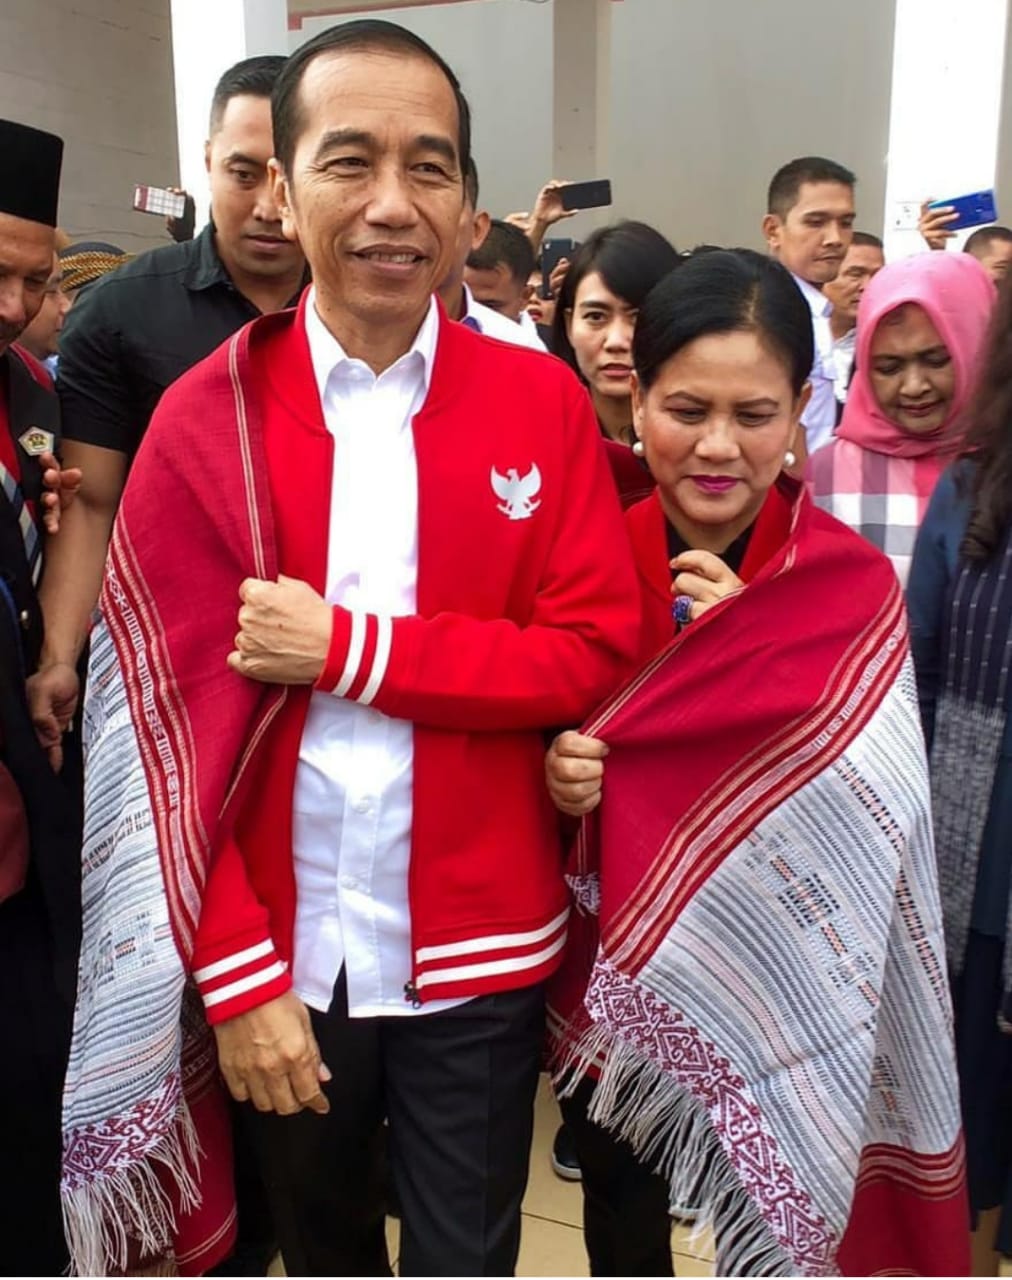 Jaket Keren yang Dipakai Presiden Jokowi Ini Mencuri Perhatian, Merek Apa Ya?